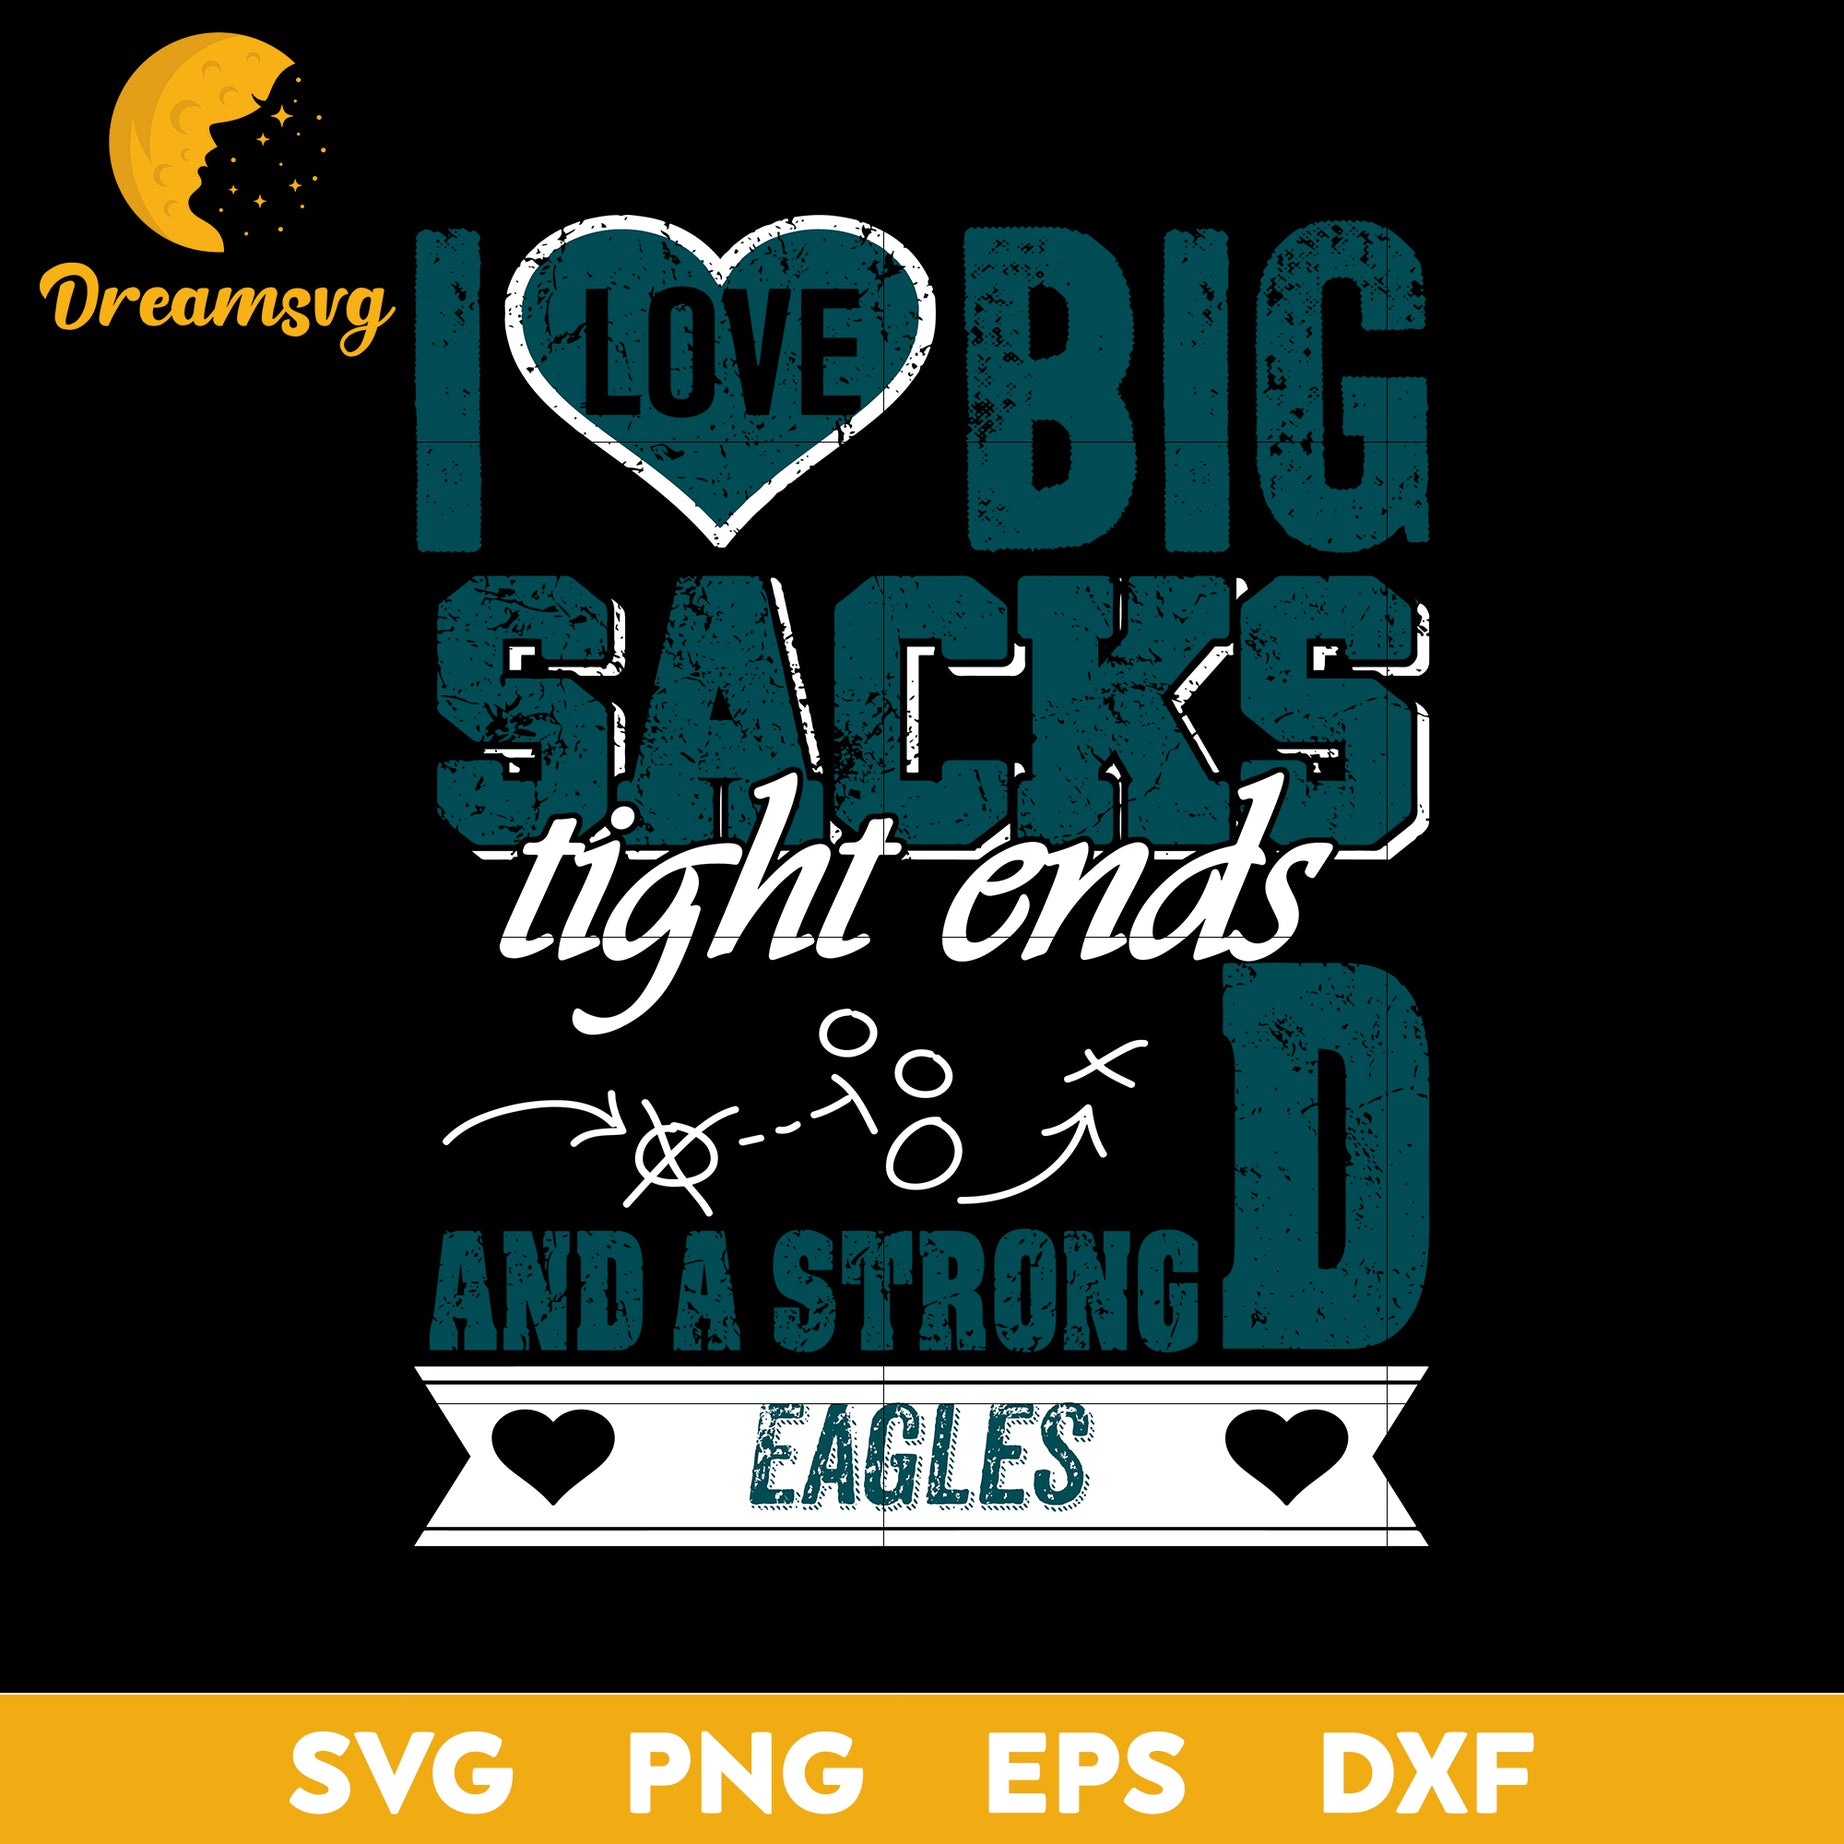 I Love Big Sacks tight ends and a strongD Philadelphia Eagles Svg , Nfl Svg, Png, Dxf, Eps Digital File.